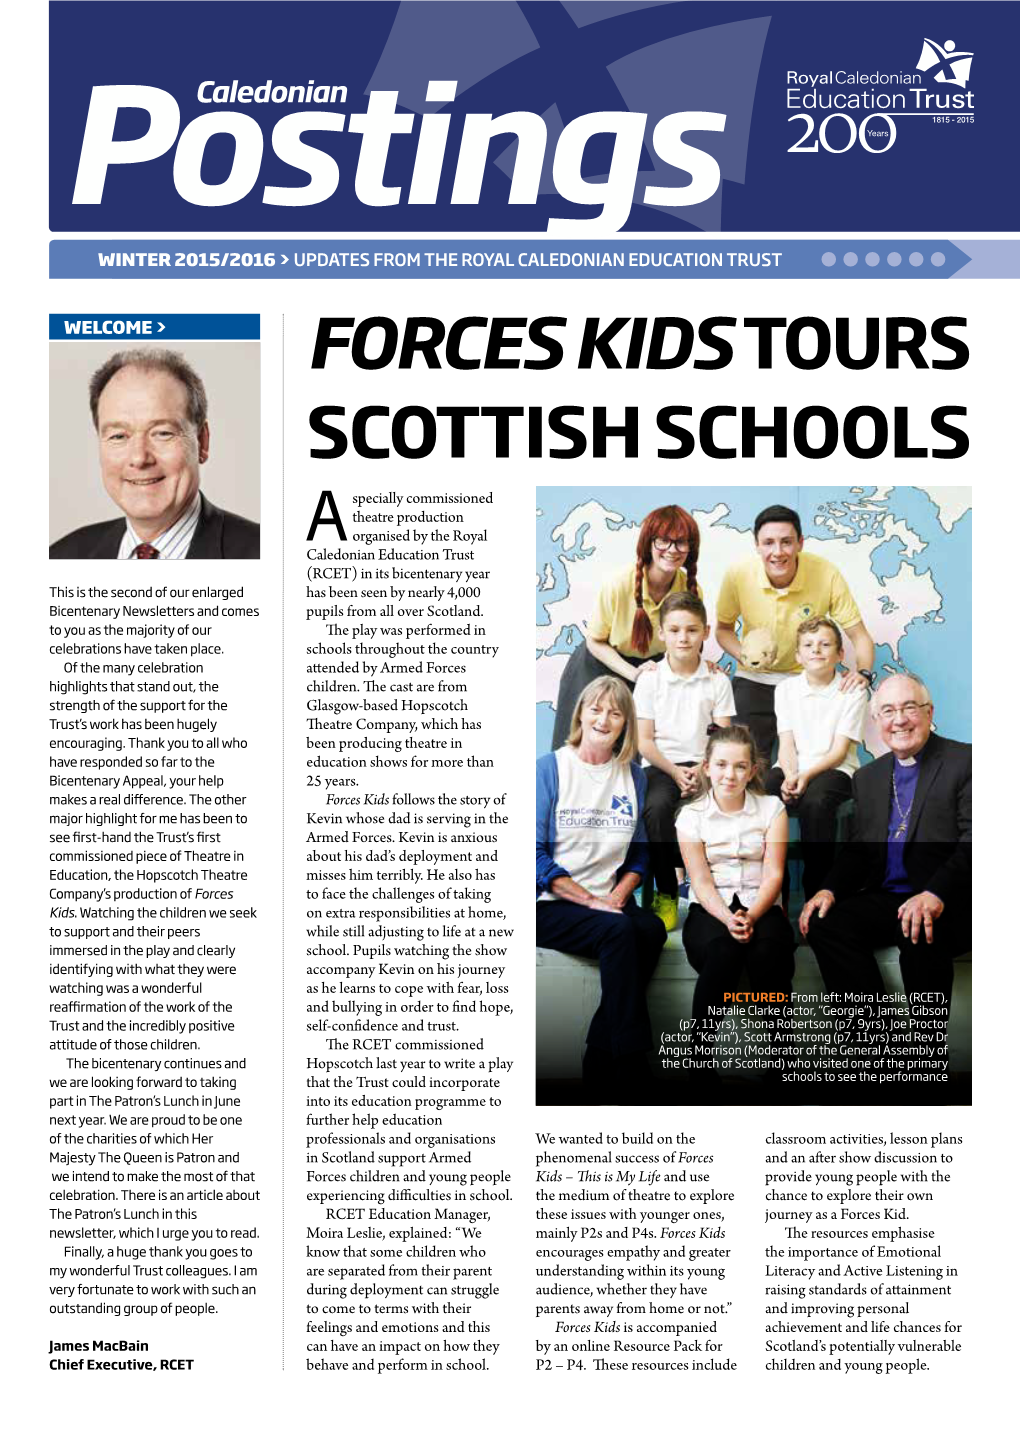 Forces Kidstours Scottish Schools